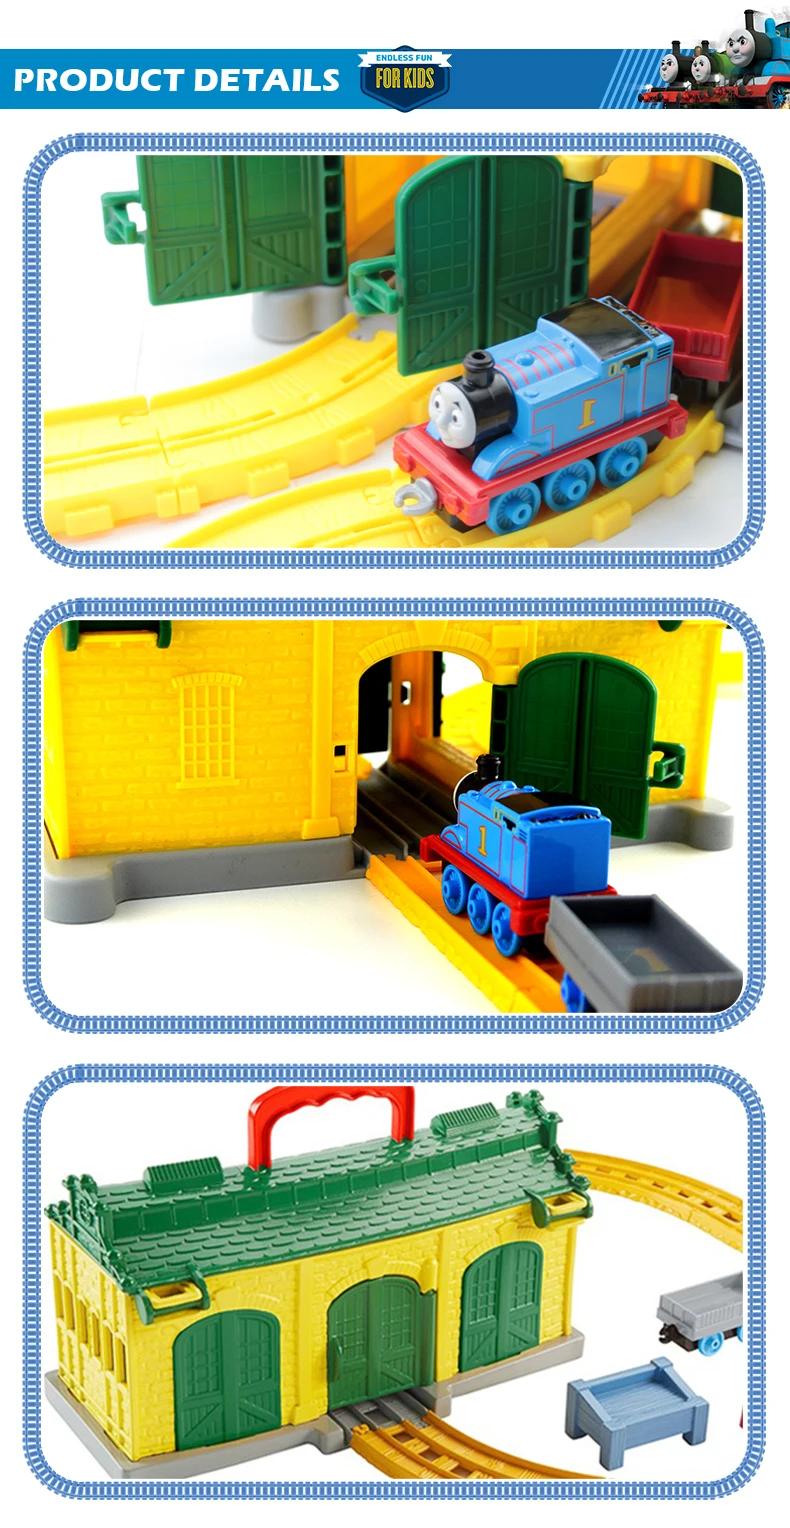 Томас и Друзья DGC10 поезд трек игрушка tidрот Сараи литой Matel двигатель игровой набор железнодорожная станция коробка для хранения для детей подарок